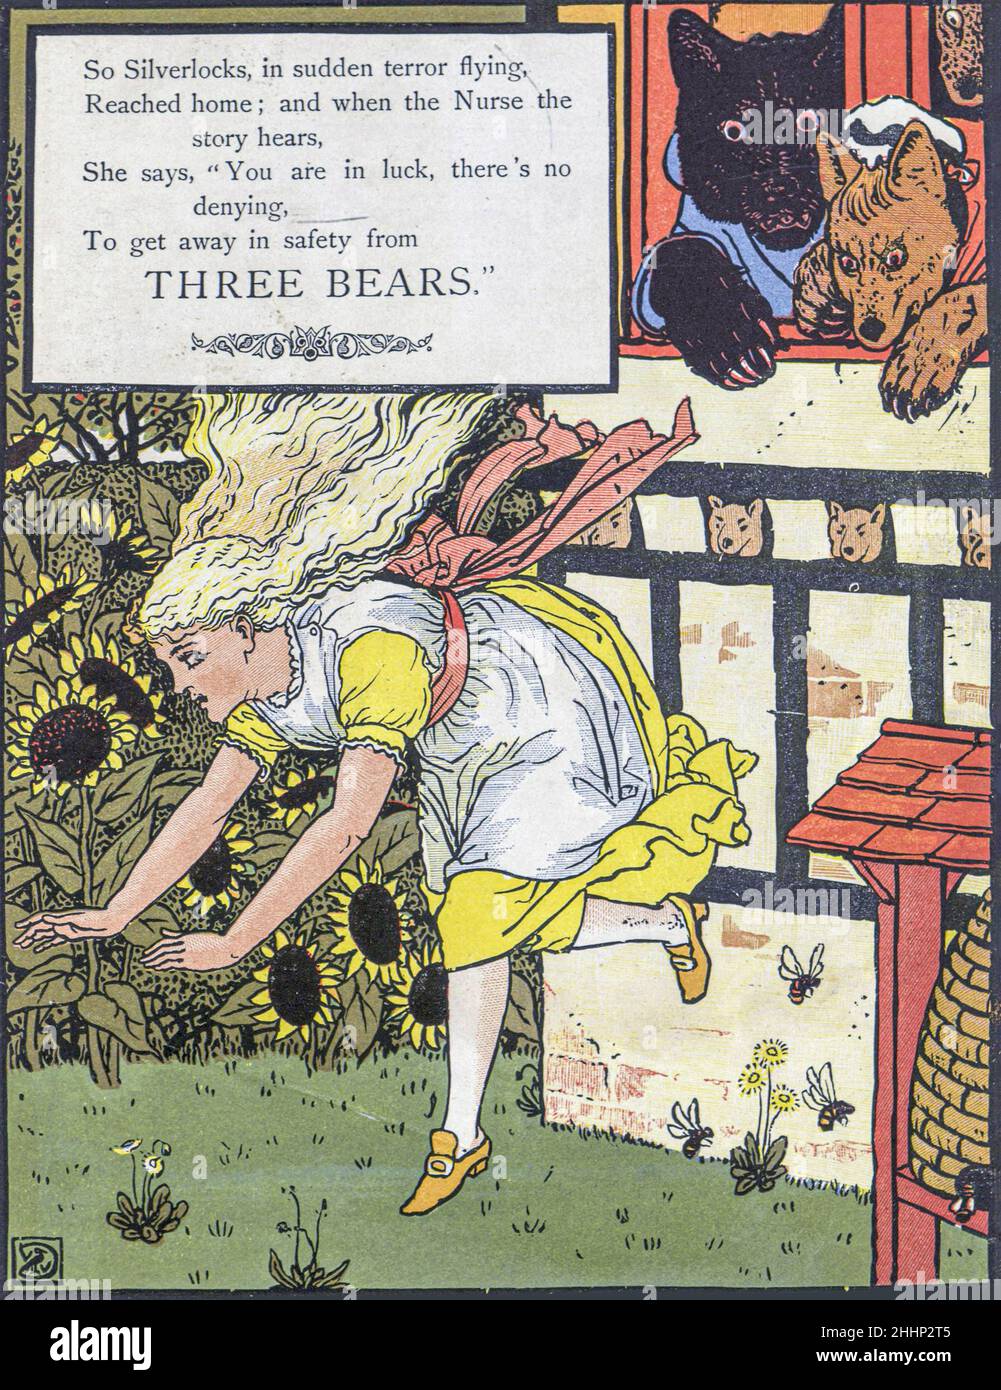 Les trois ours illustrés par Walter Crane 1873.Publié à Londres par George Routledge and Sons.'Goldilocks and the Three Bears' (à l'origine intitulé 'The Story of the Three Bears') est un conte de fées britannique de 19th siècles dont trois versions existent.La version originale de l'histoire raconte une vieille femme pas-si-polie qui entre dans la maison de forêt de trois Bachelor Bears pendant qu'ils sont loin.Elle s'assoit dans leurs chaises, mange une partie de leur soupe, s'assoit sur l'une de leurs chaises et la casse, et dort dans un de leurs lits.Quand les ours reviennent et la découvrent, elle se réveille, saute du vent Banque D'Images